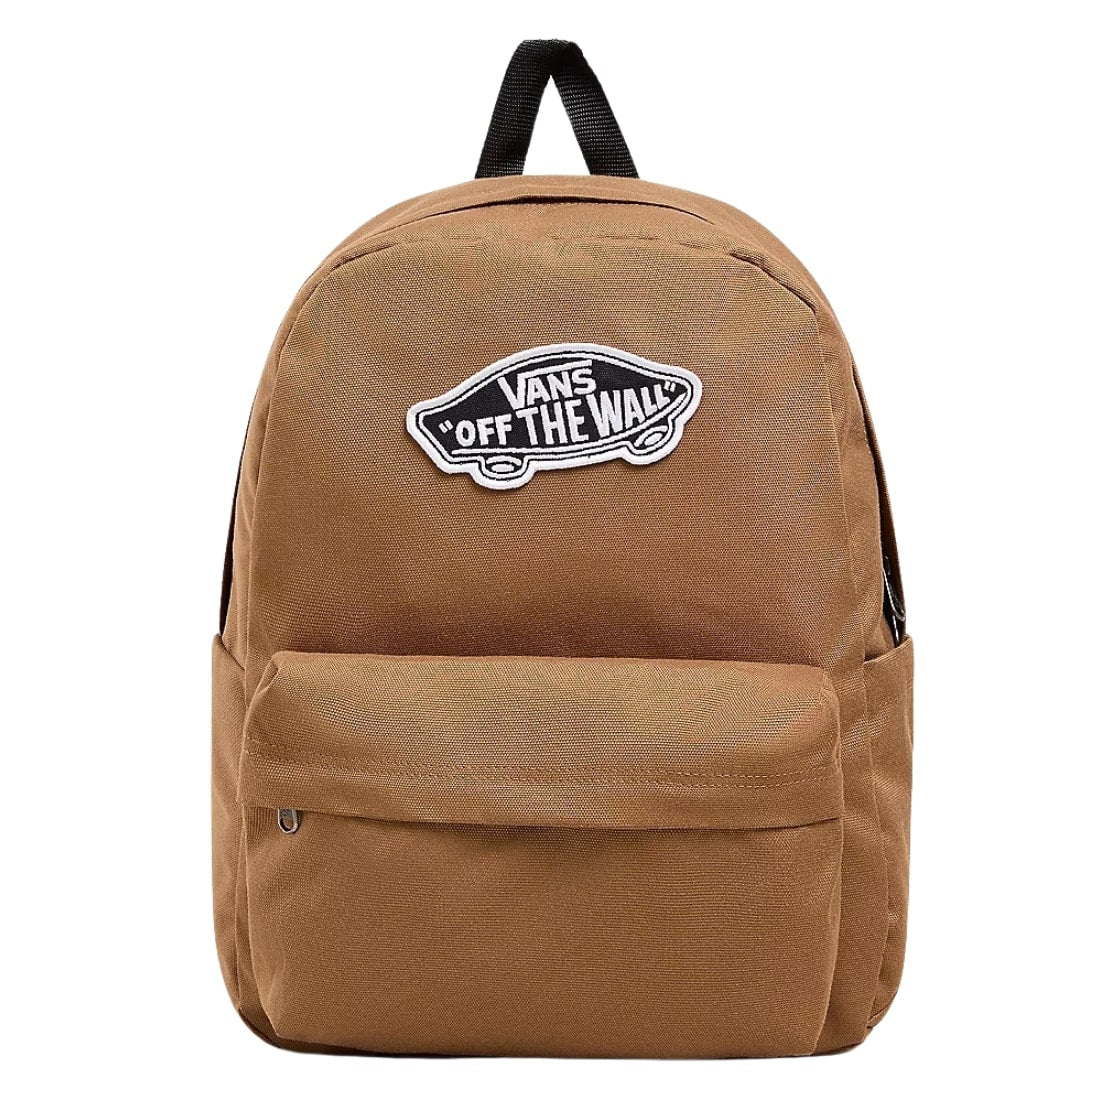 Vans Old Skool Classic Backpack - Brown - Backpack by Vans One Size